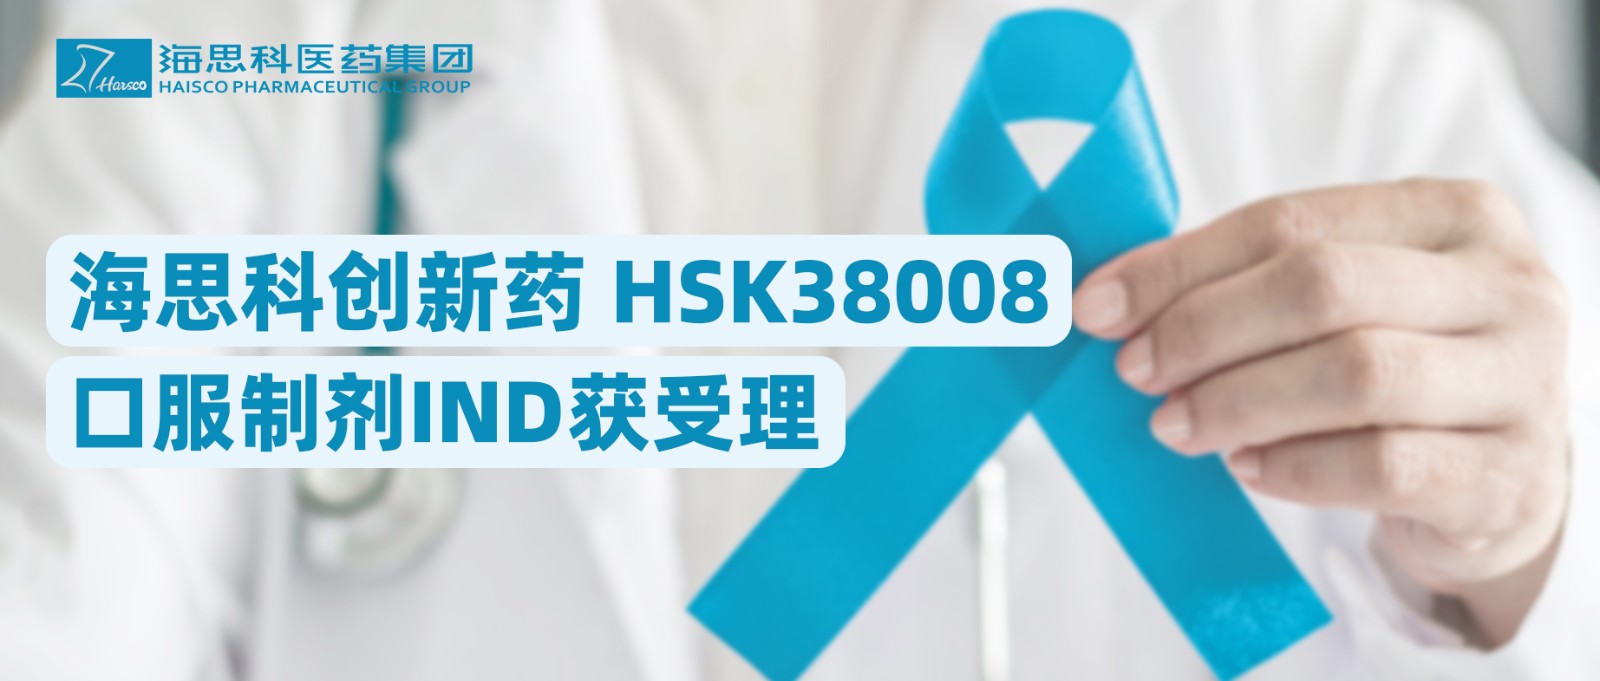 明升ms88创新药HSK38008口服制剂IND获受理